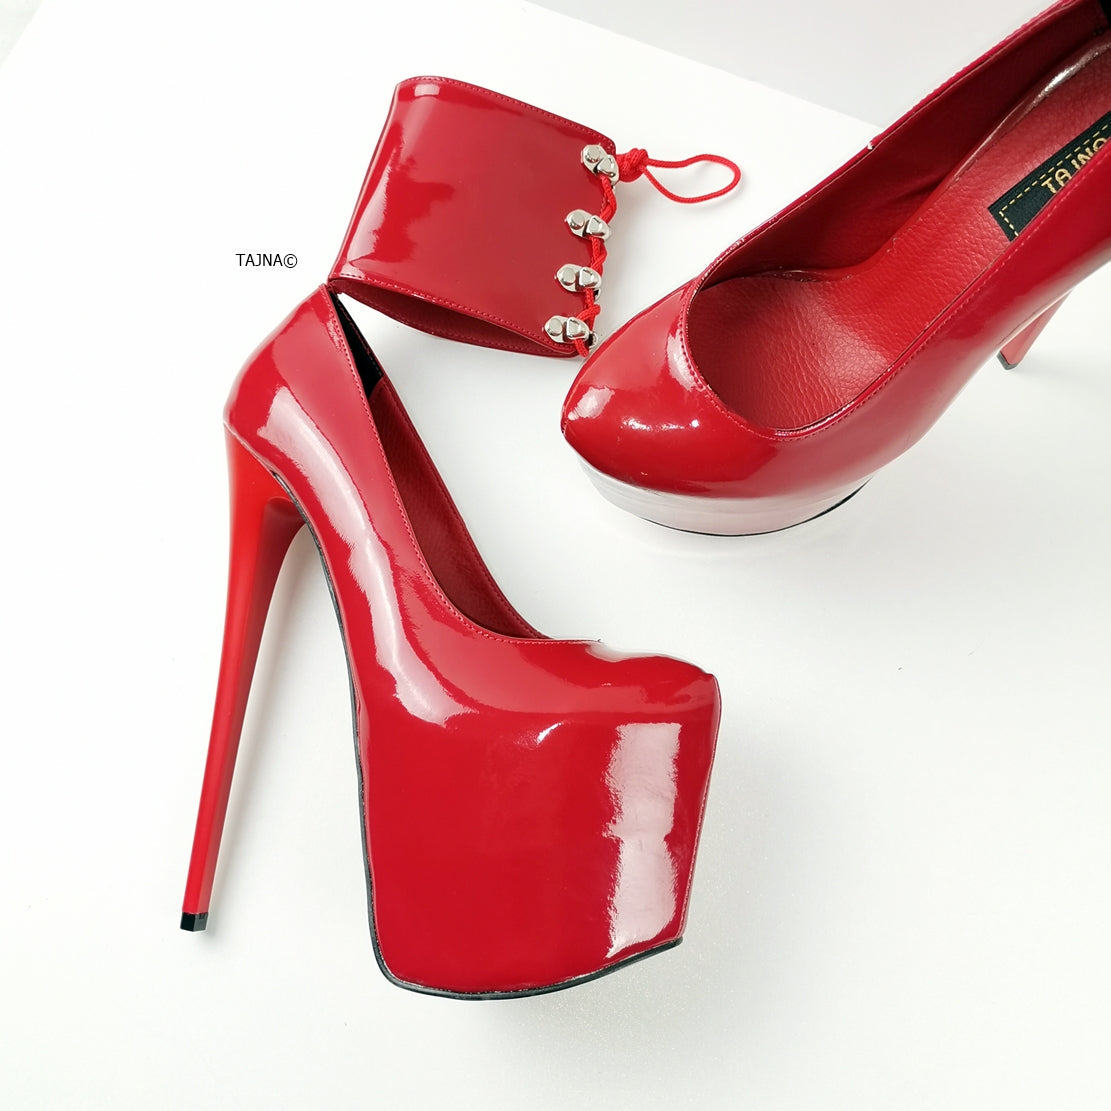 Ankle Cuff Red Patent High Heels - Tajna Club